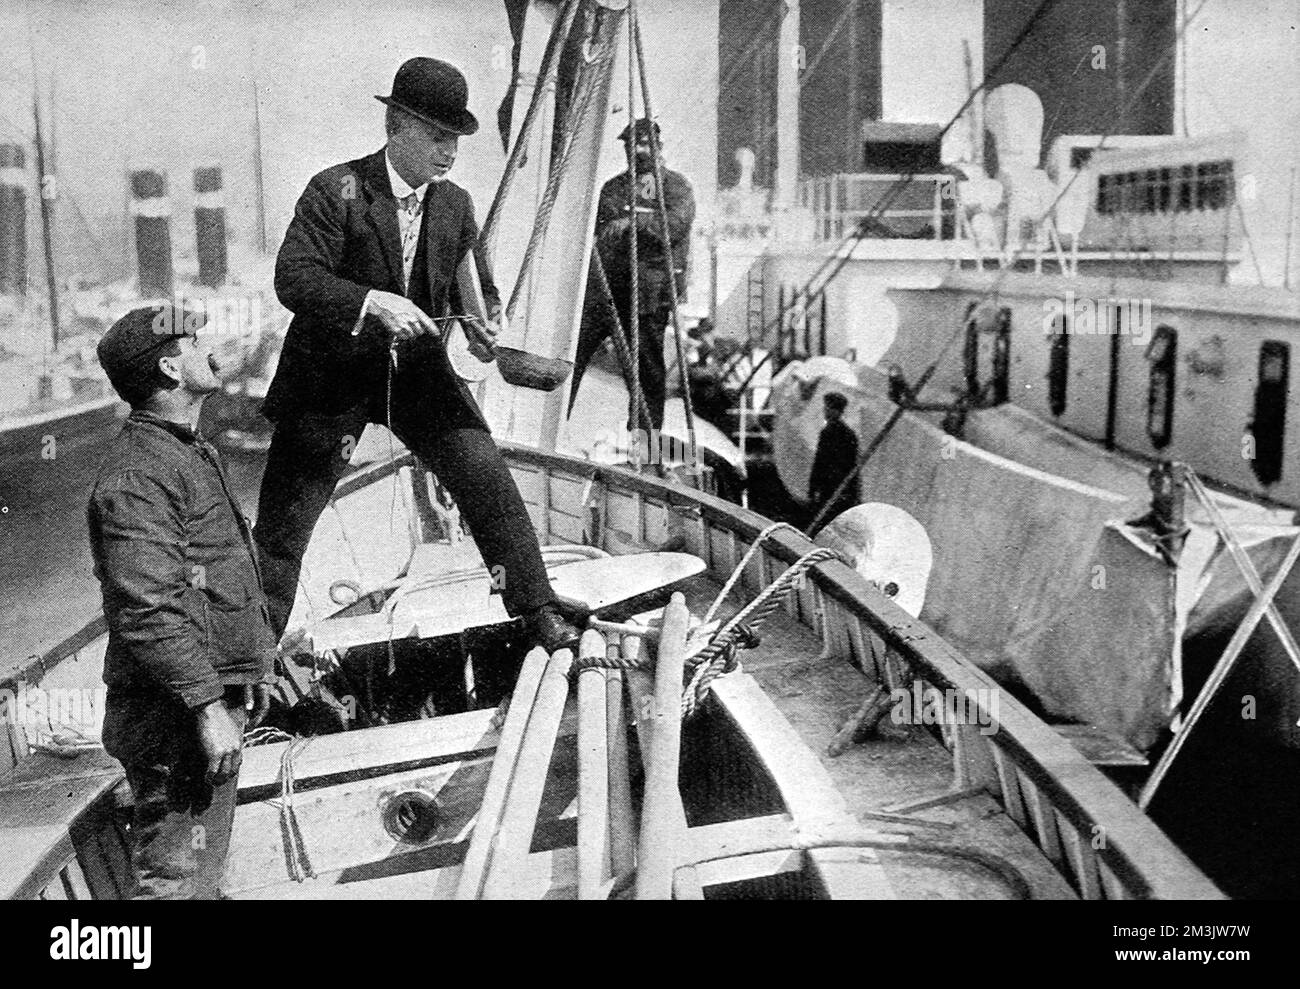 Captain Clarke, Vertreter des Handelsamtes, testet die Rettungsboote auf der RMS-Olympiade. Nach der Katastrophe auf der „Titanic“ nahm White Star Line viele Sicherheitsmodifikationen an „Olympic“ vor, darunter weitere Rettungsboote. „Olympic“ wurde 1910 von Harland und Wolff, Belfast, gestartet und wurde mit einer Länge von 882 Fuß und einem Gewicht von 45.000 Tonnen zum größten Schiff, das damals über Wasser flog. Sie wurde von 1911 bis 1914 auf dem Atlantikdienst zwischen Großbritannien und Nordamerika operiert. Von 1915 bis 1918 diente „Olympic“ als Truppenschiff und kehrte dann zur Arbeit auf dem atlantischen Dienst zurück. Sie war im Ruhestand und Stockfoto